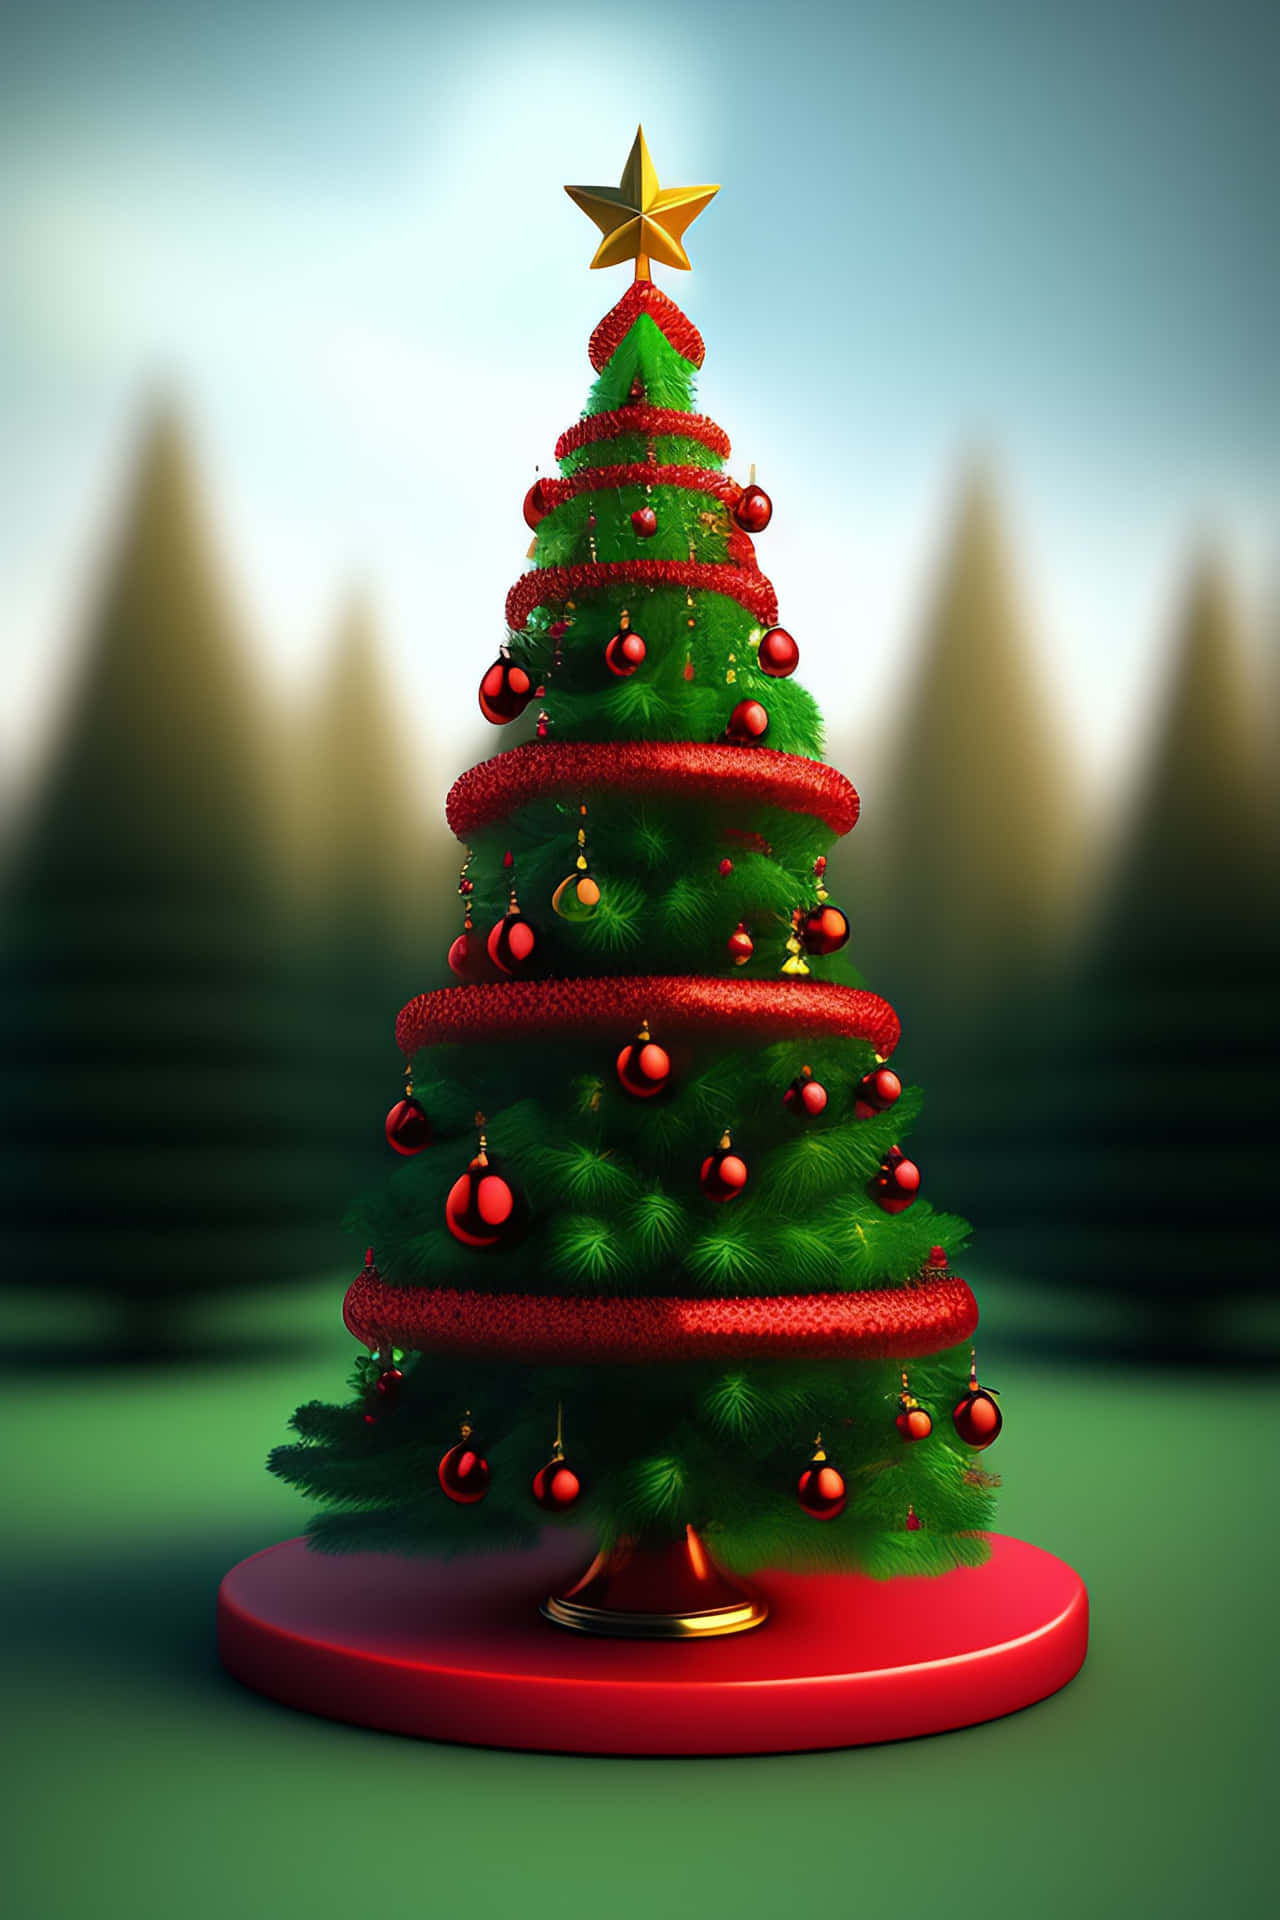 Festive 3D Christmas Scene Wallpaper